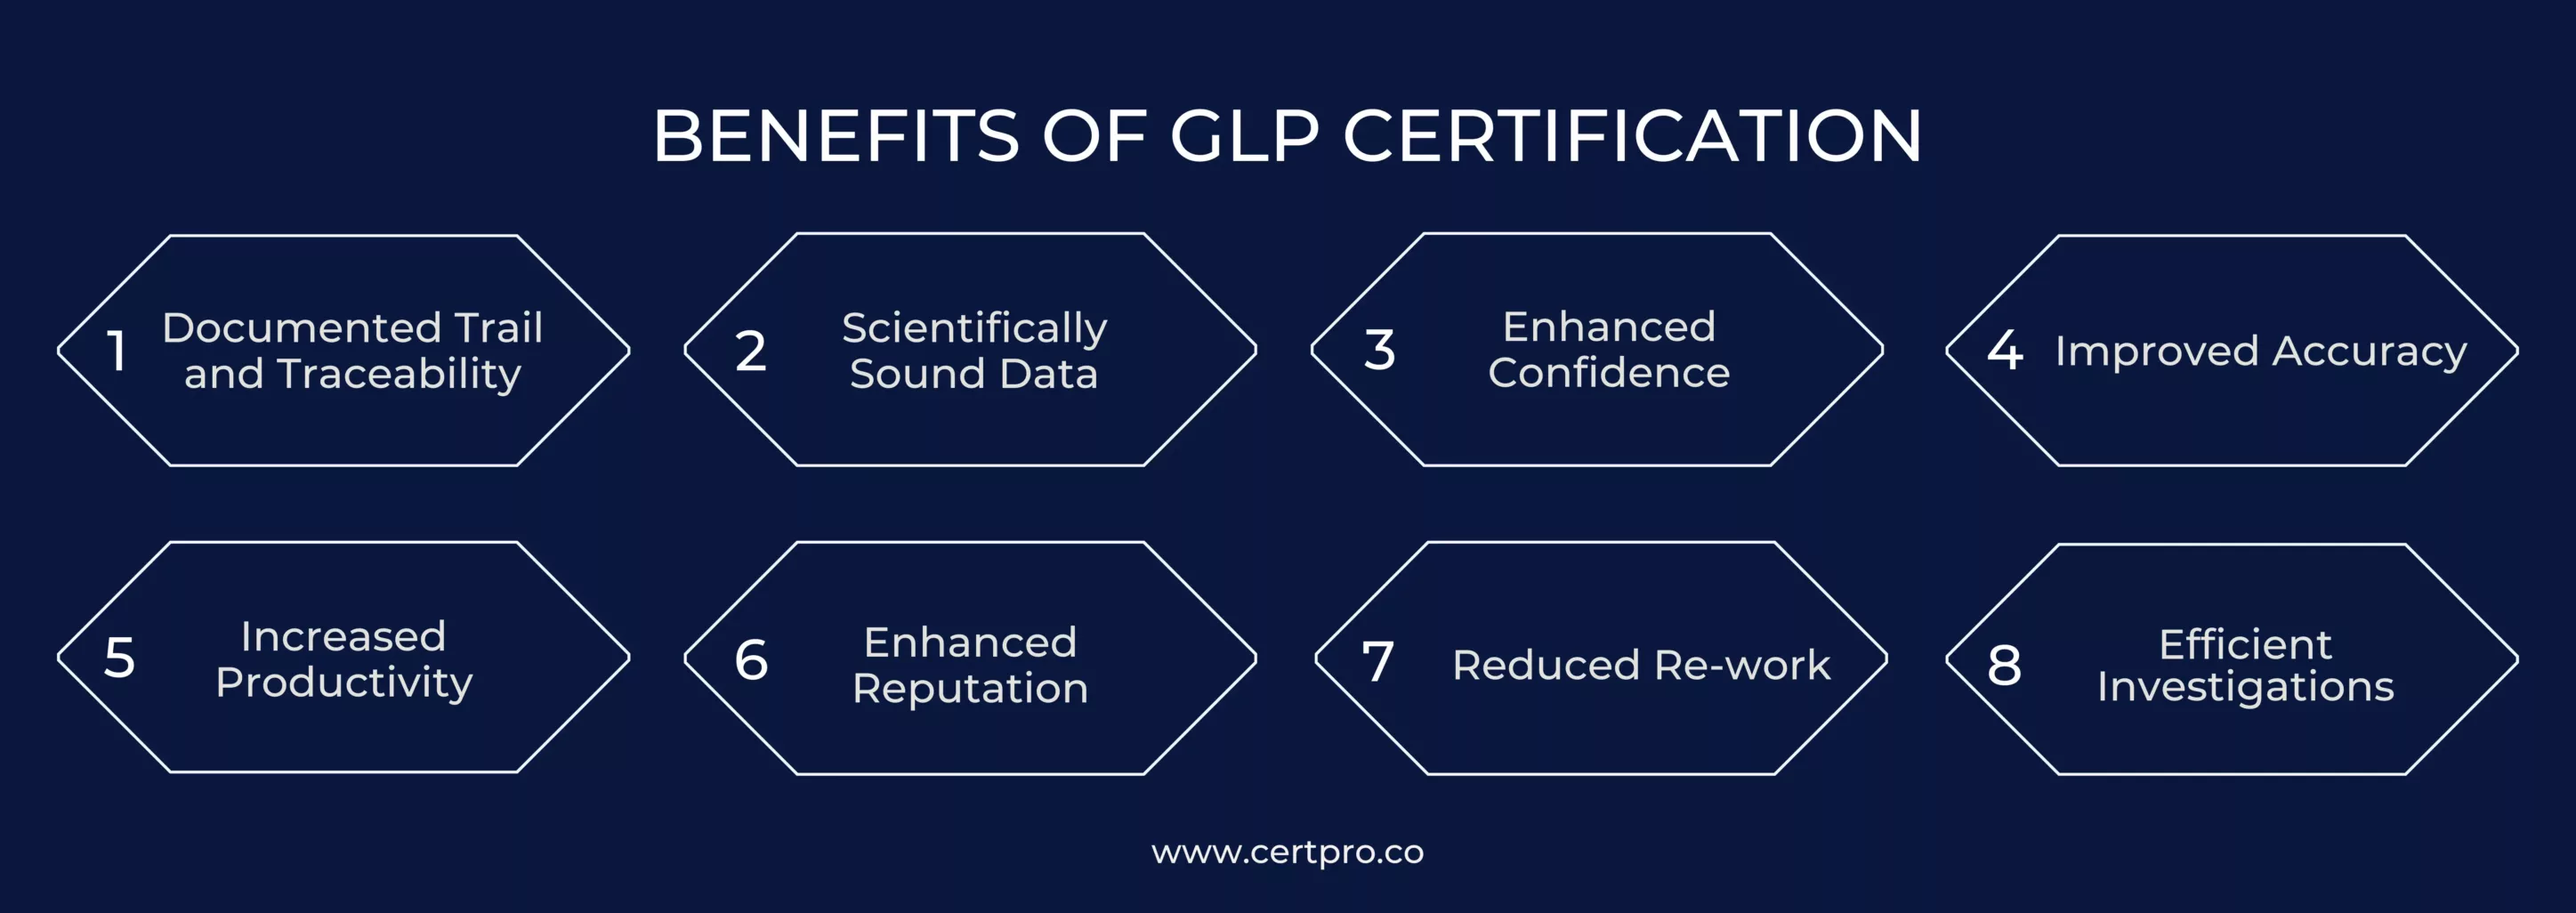 BENEFITS OF GLP CERTIFICATION